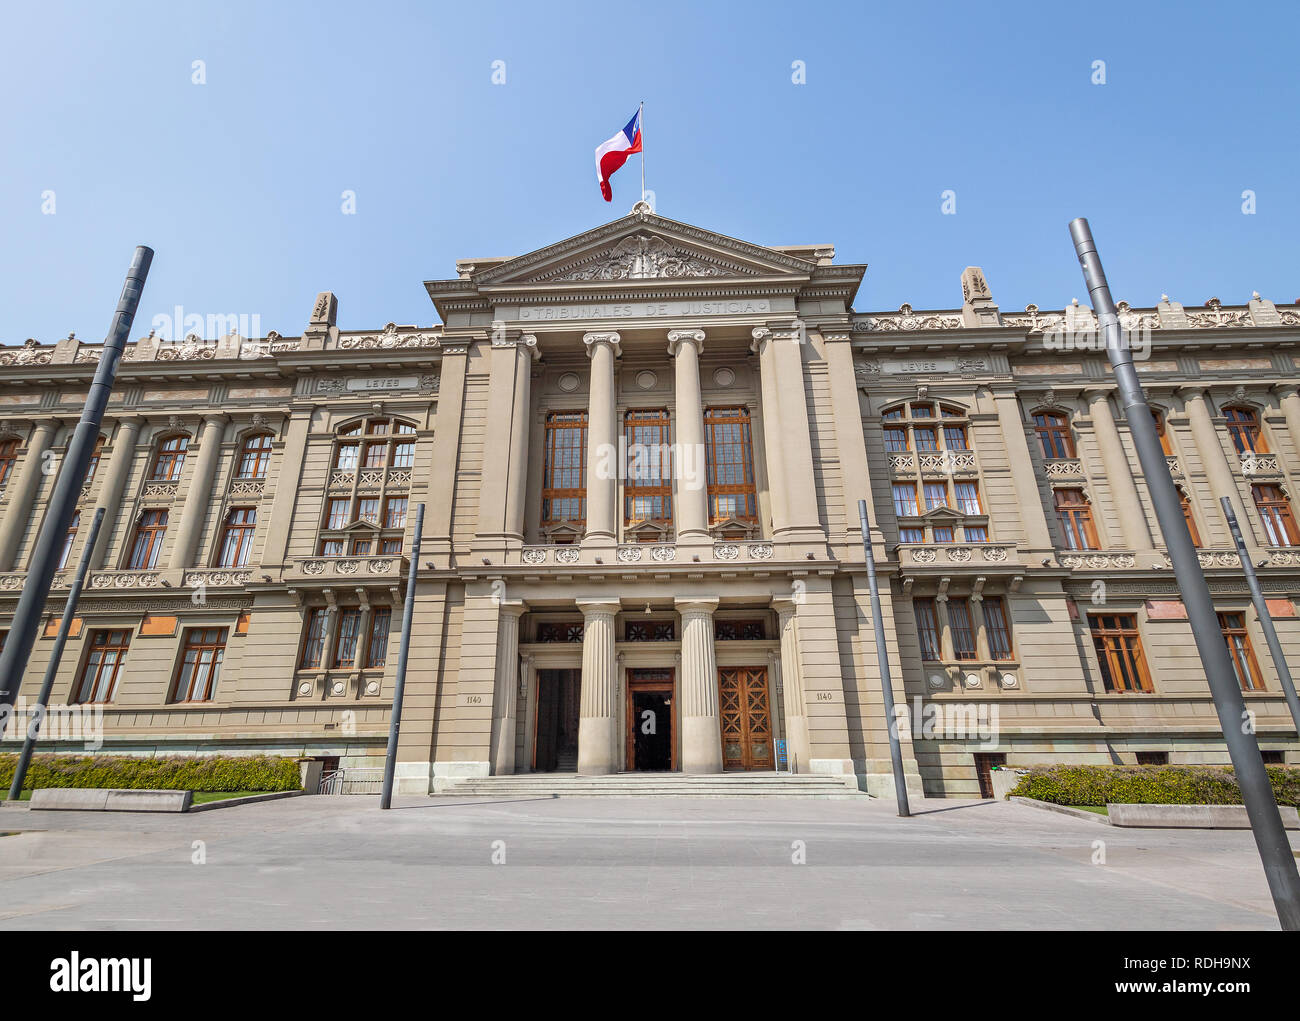 Der oberste Gerichtshof von Chile - Gerichtshöfe Palace Plaza Montt-Varas Square - Santiago, Chile Stockfoto